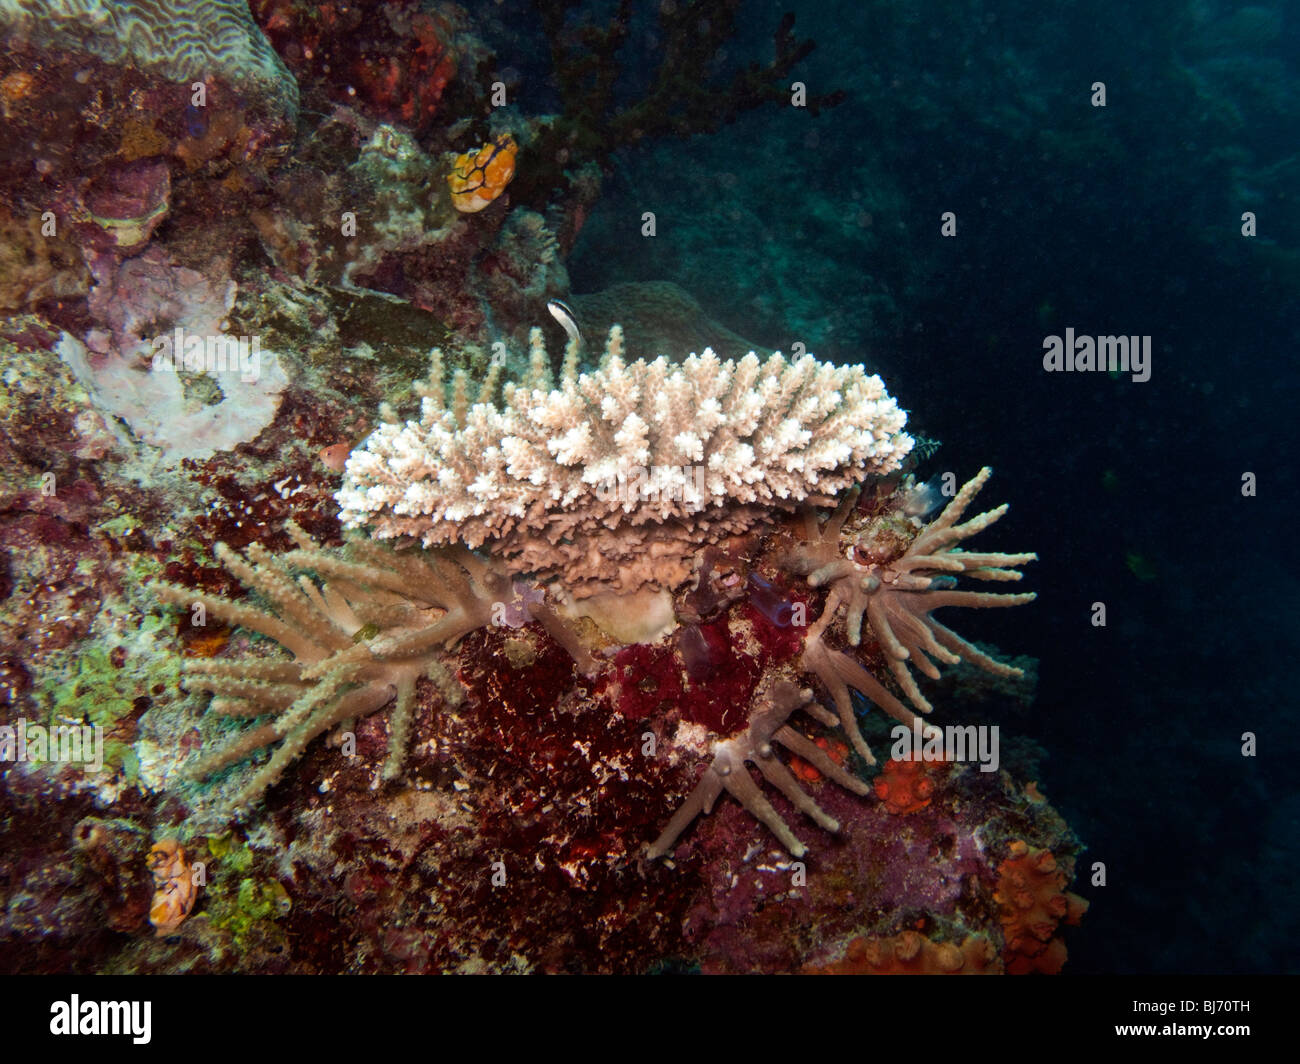 Indonesia Sulawesi, Wakatobi. Parco Nazionale, Coral reef subacqueo, diversi colorati coralli duri Foto Stock